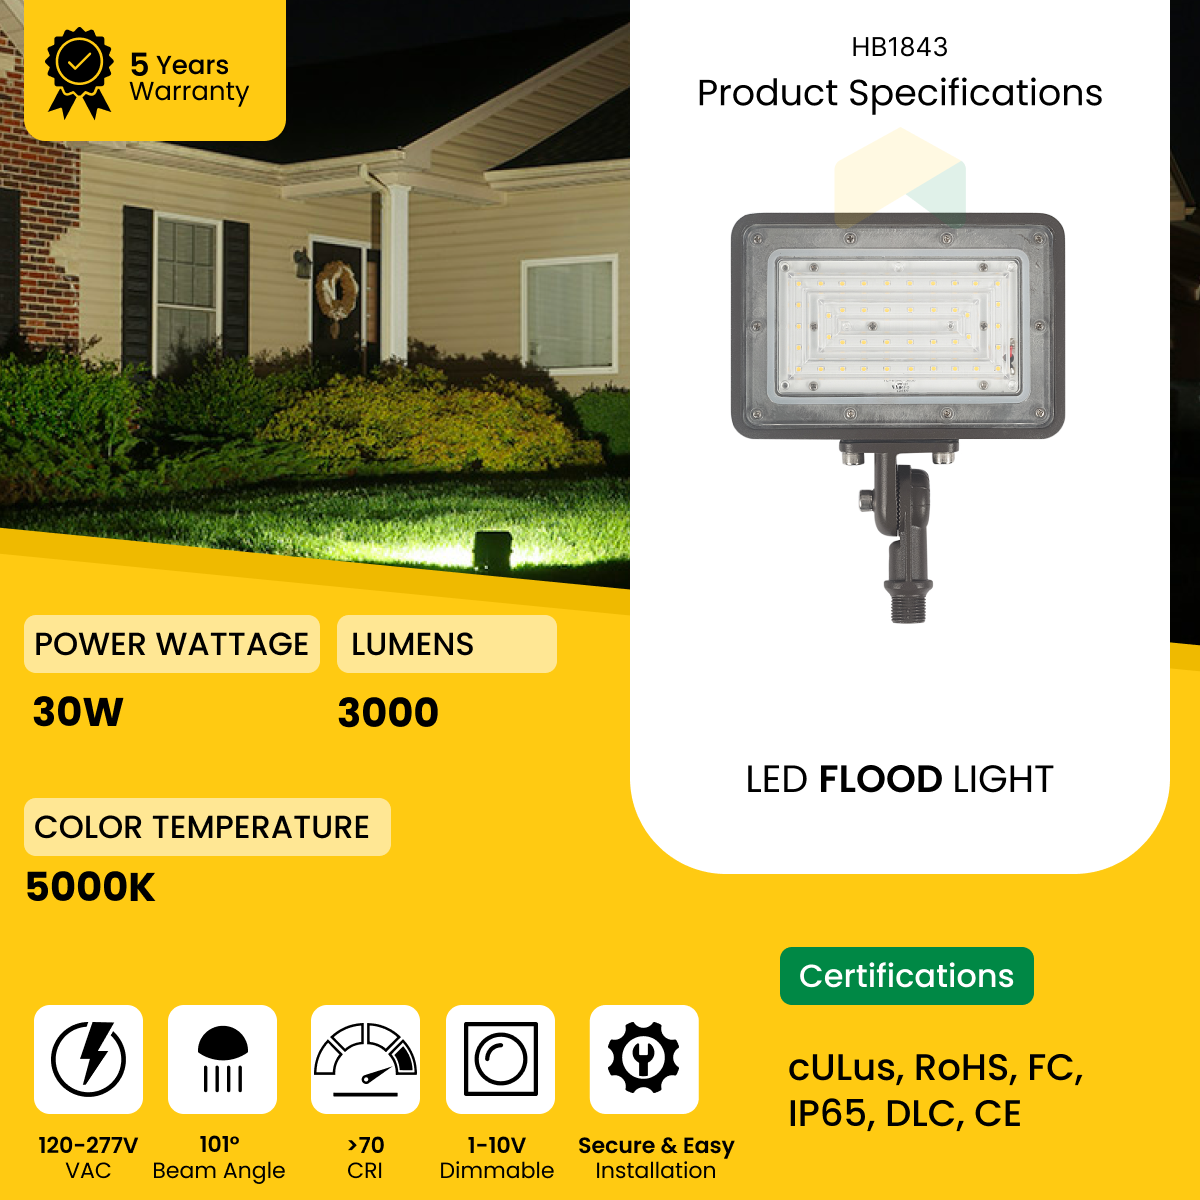 30W LED Flood Light - 5000K, Knuckle Mount, 1-10V Dimming, AC120-277V, 4350 Lumens, UL, DLC Premium Listed